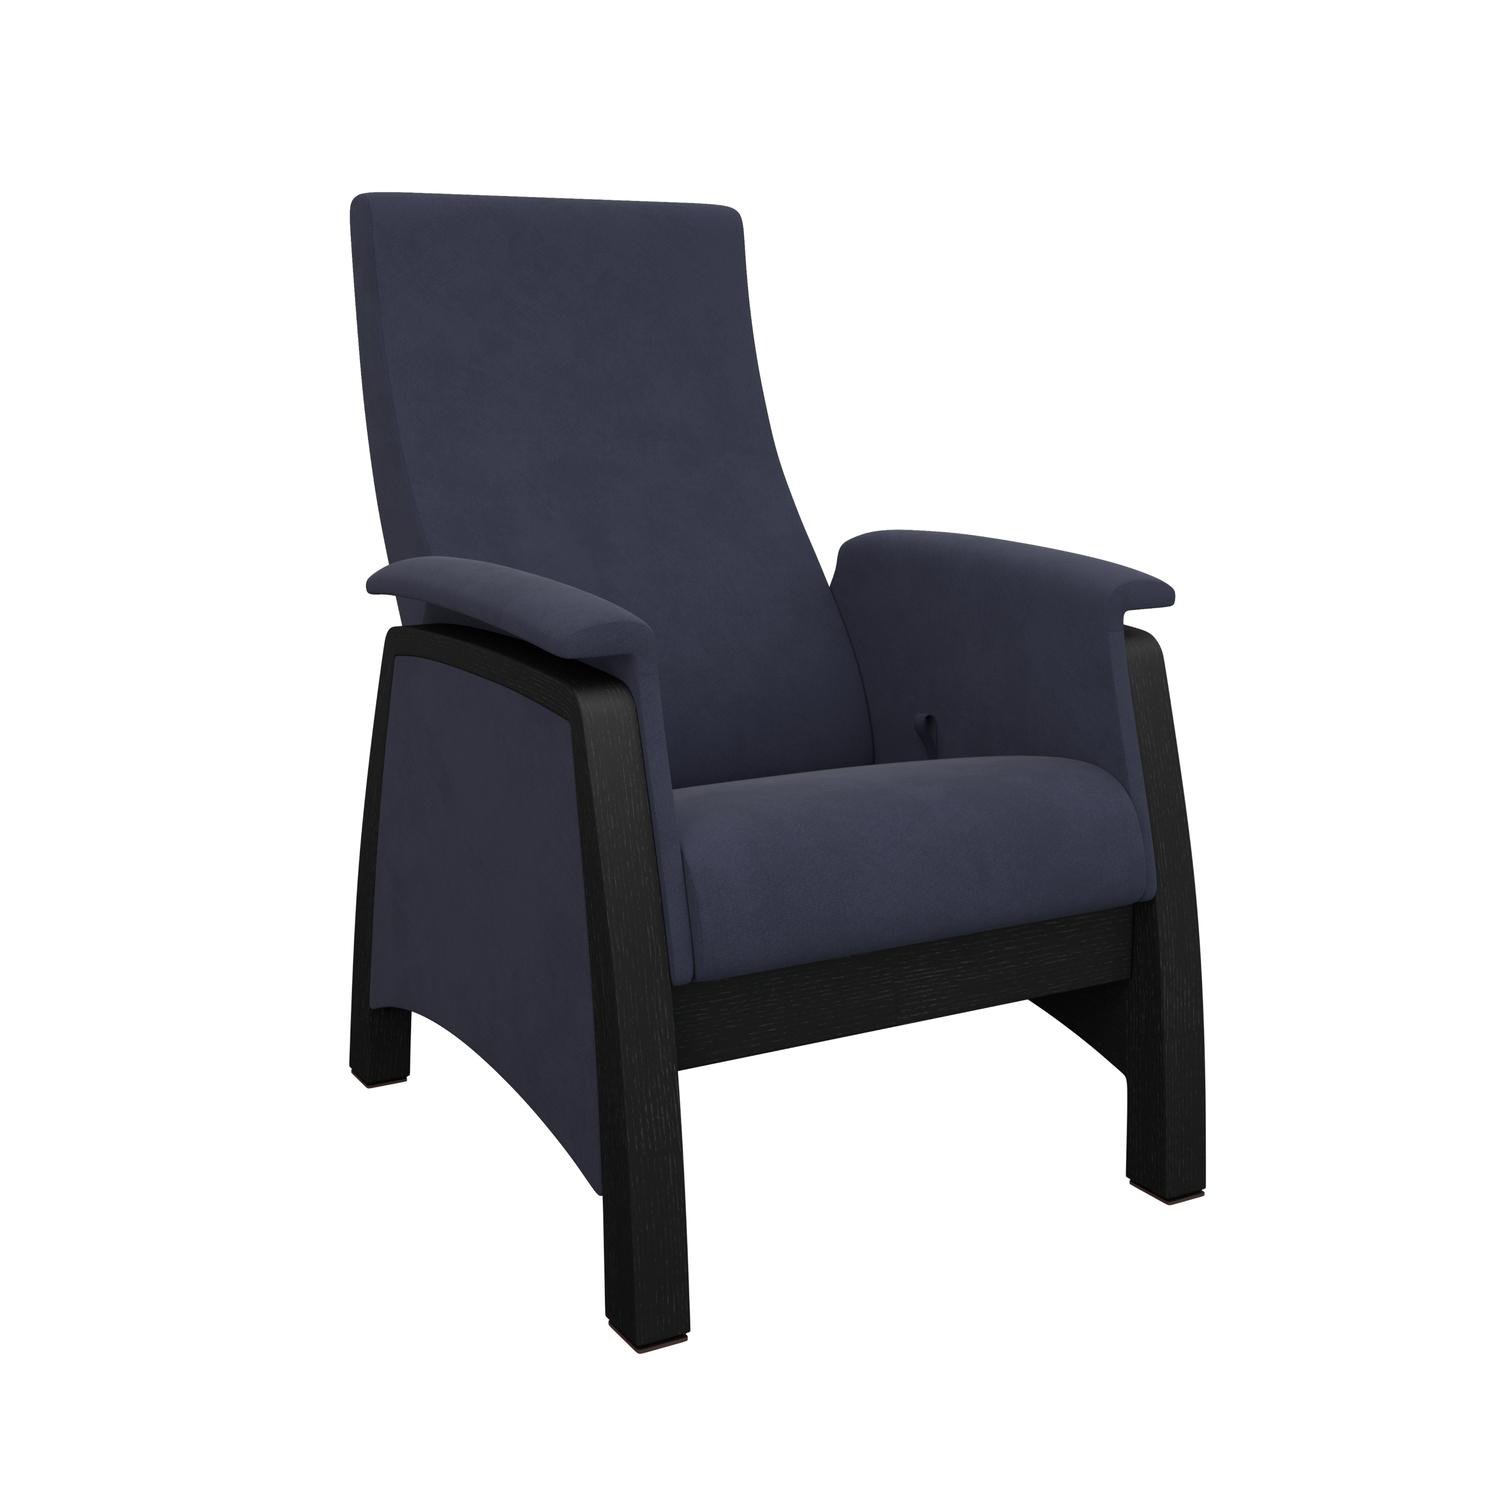 Кресло-глайдер Модель Balance 1 Венге, Verona Denim Blue